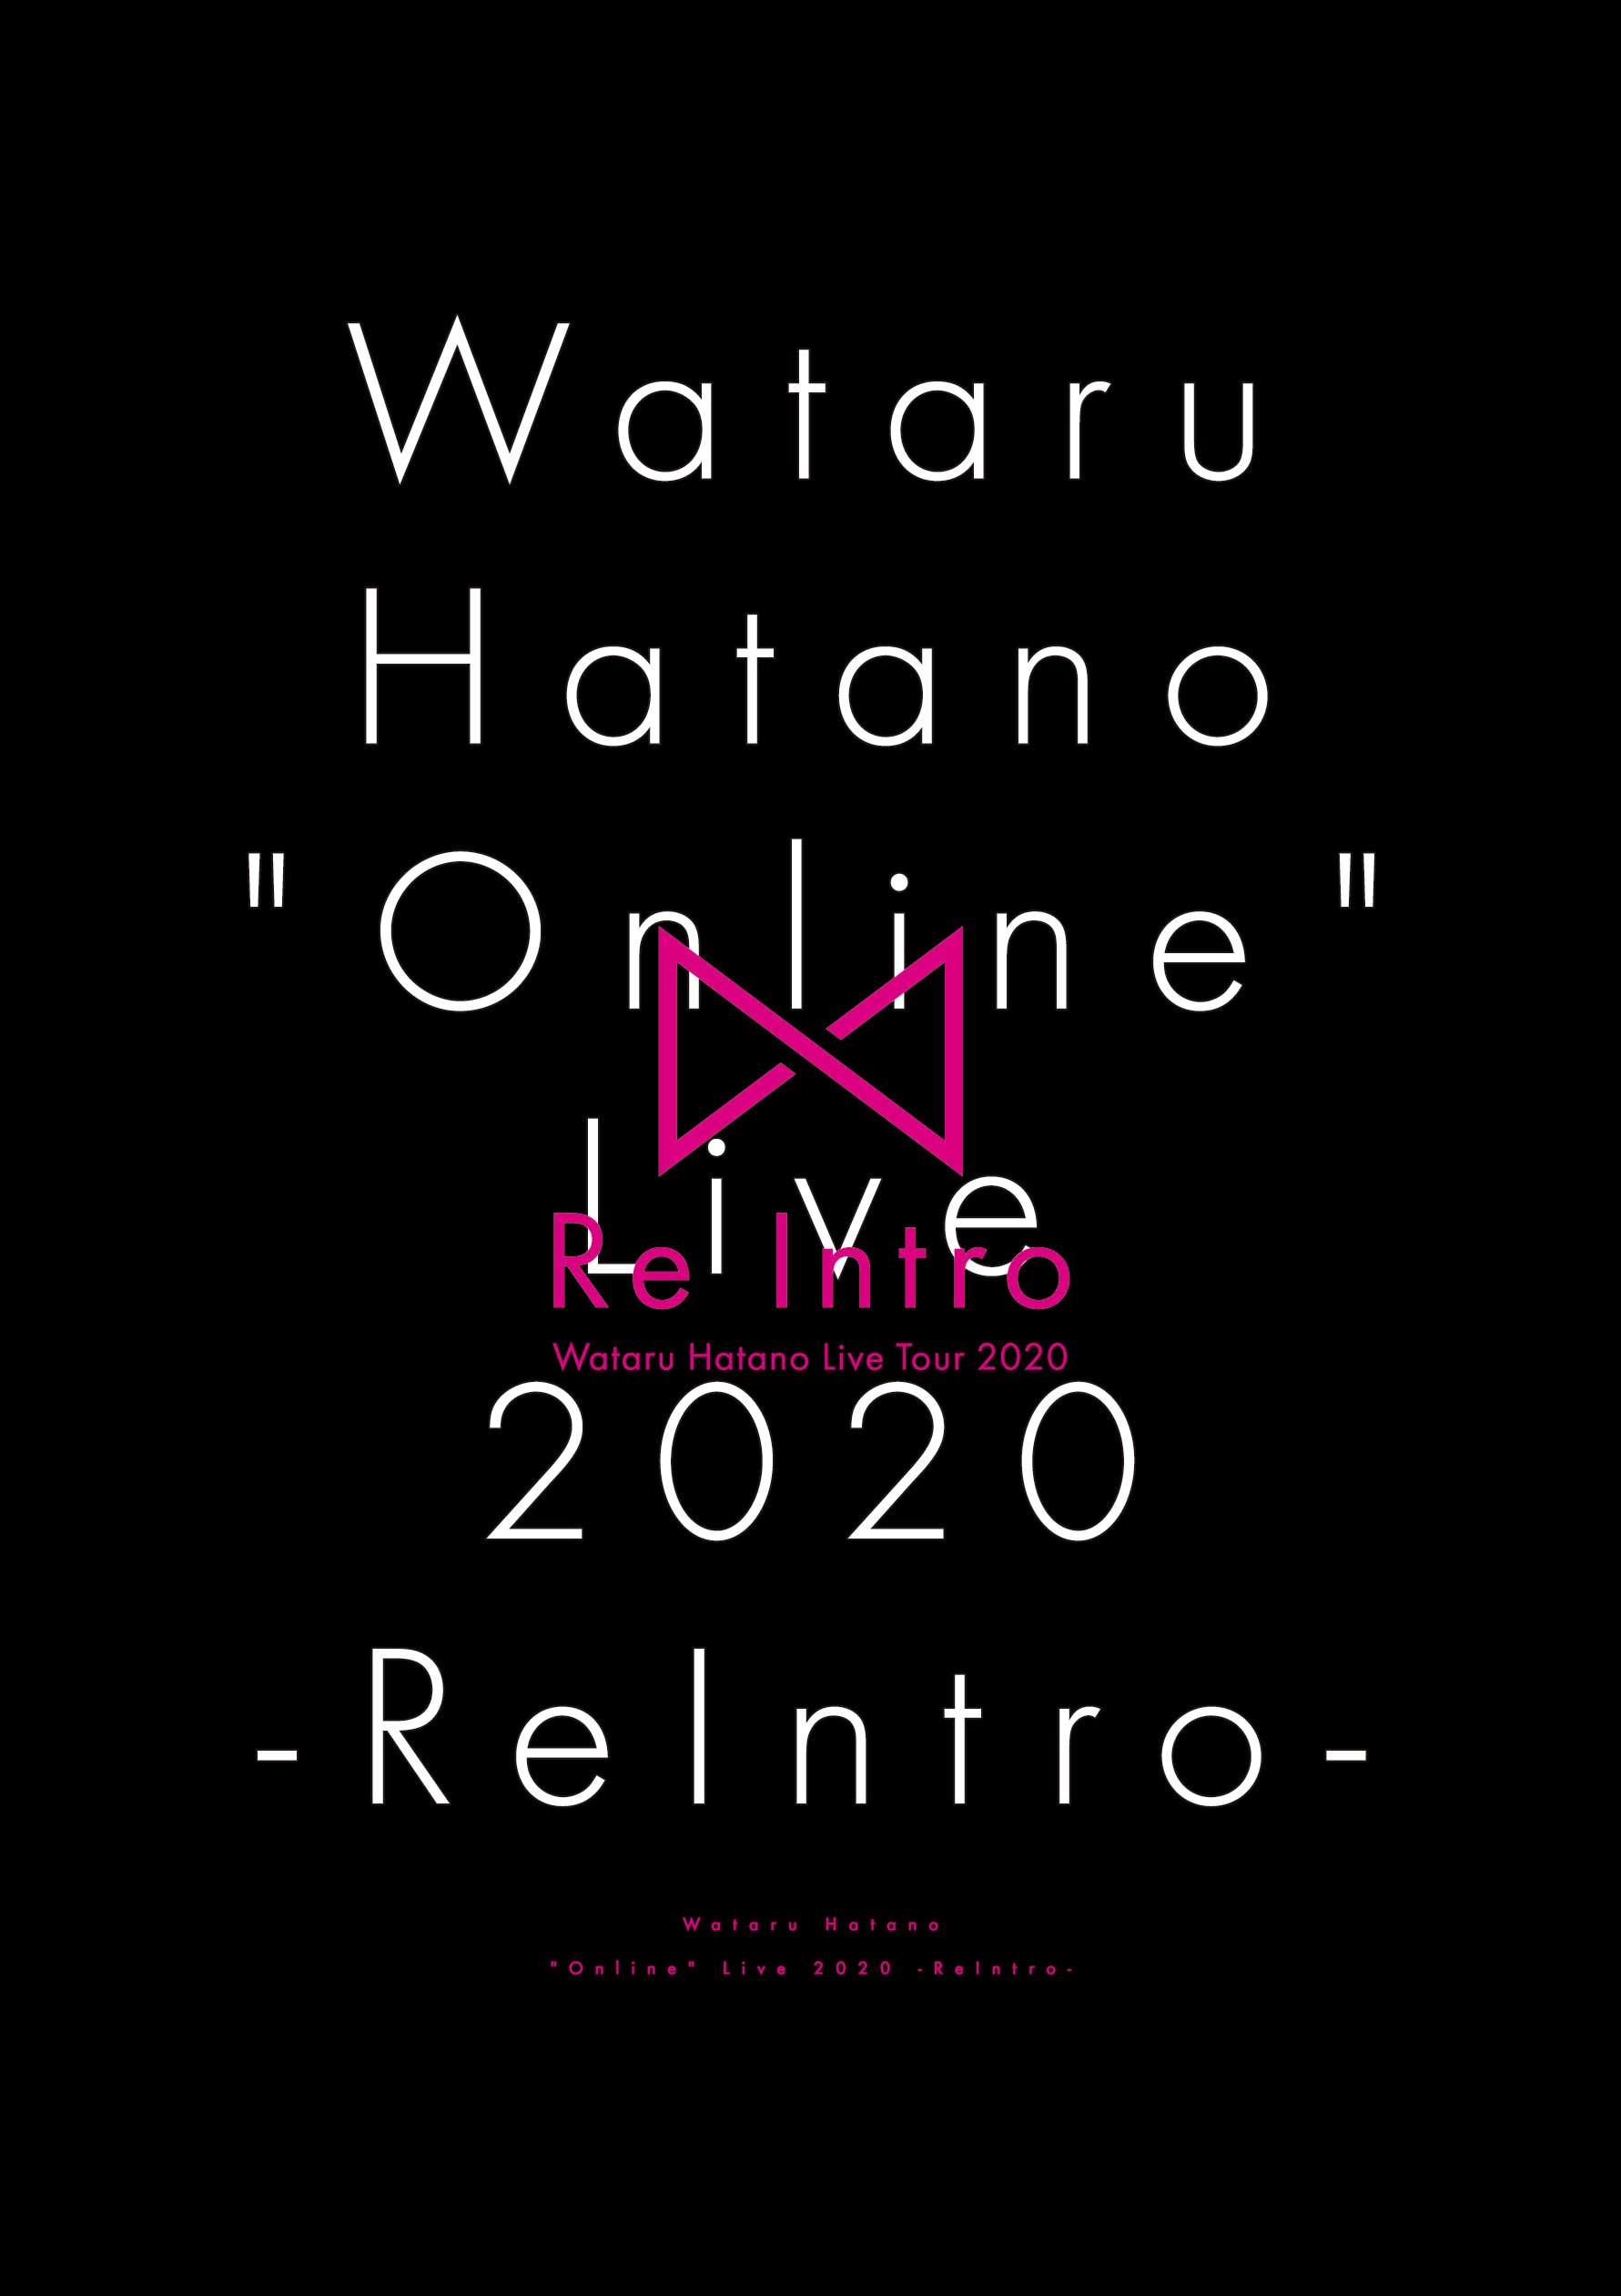 Wataru Hatano "Online" Live 2020 -ReIntro- DVD